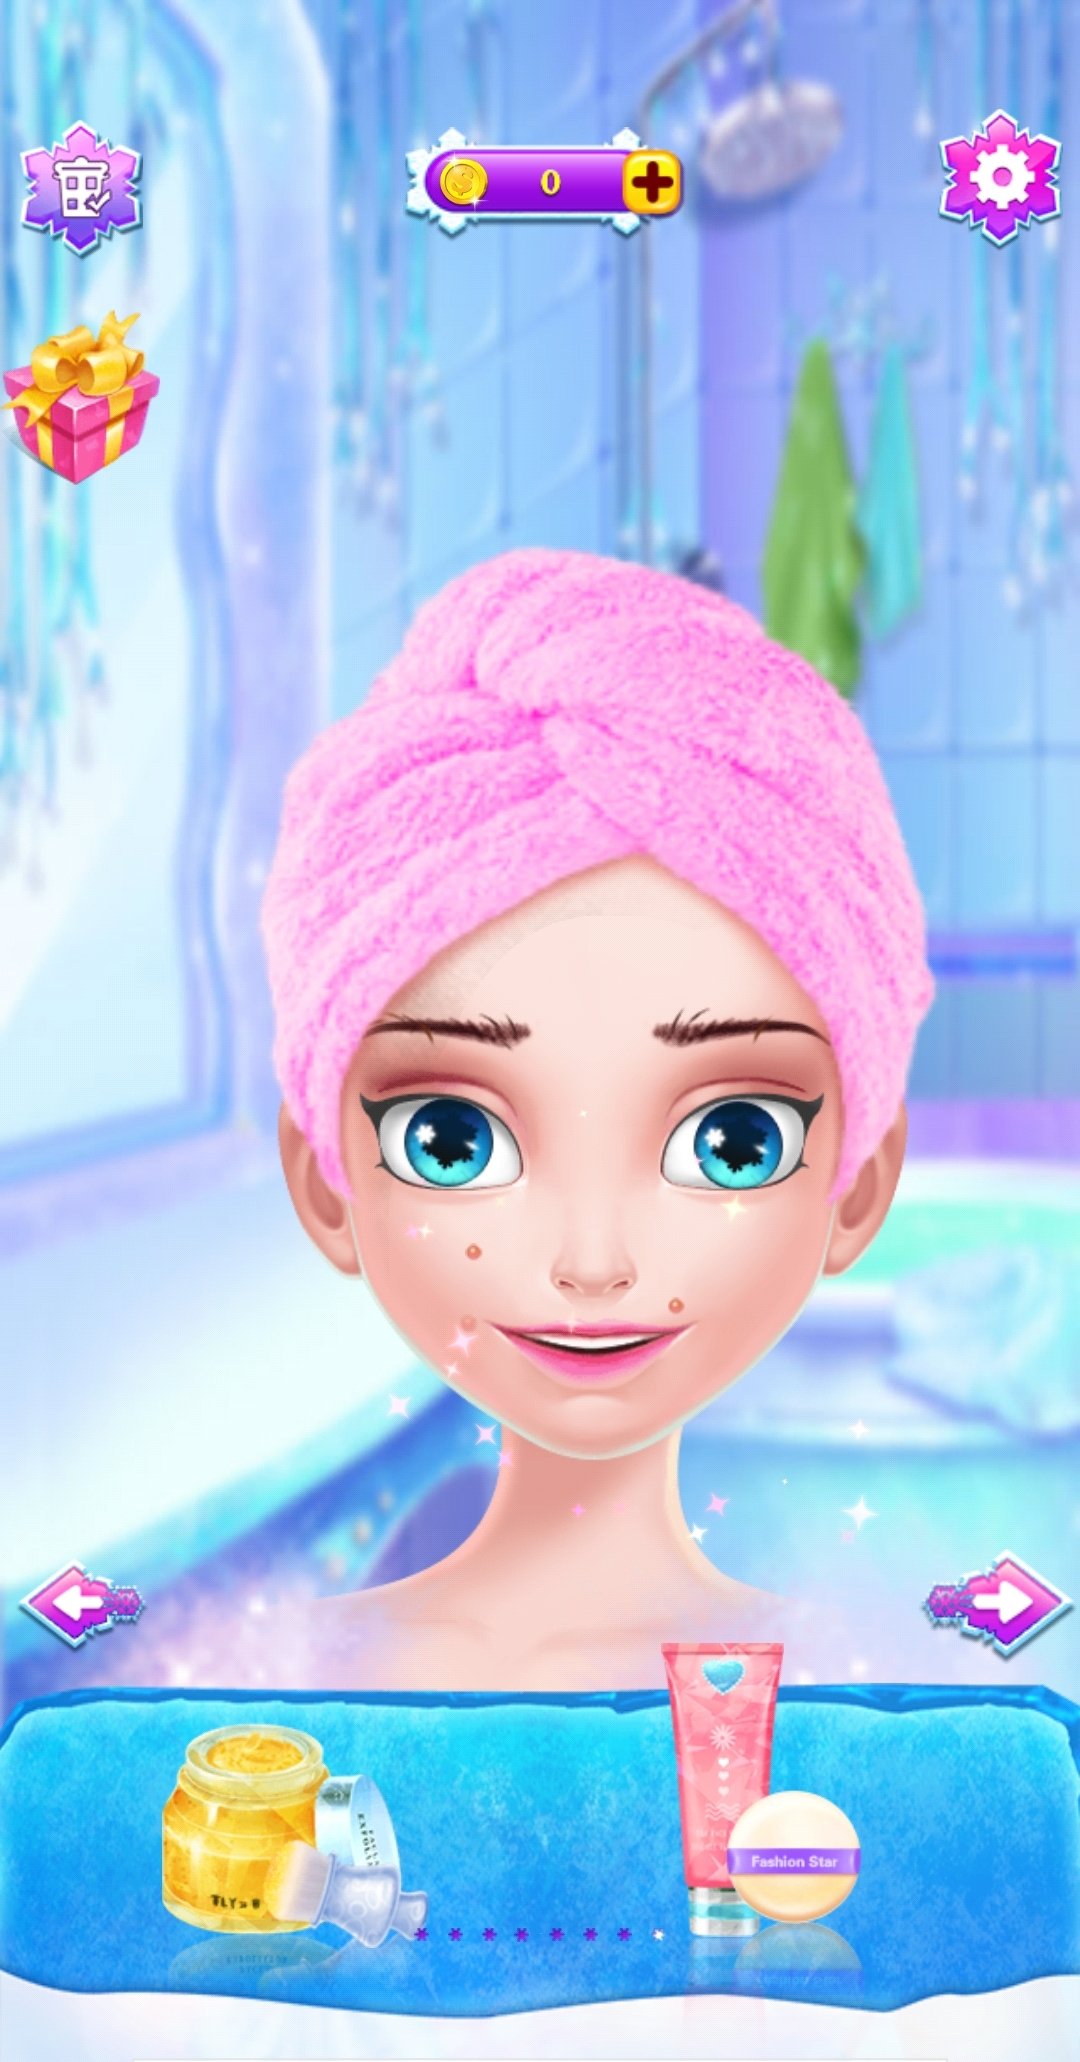 Baixar Maquiagem De Princesa De Gelo 3.3 Android - Download APK Grátis